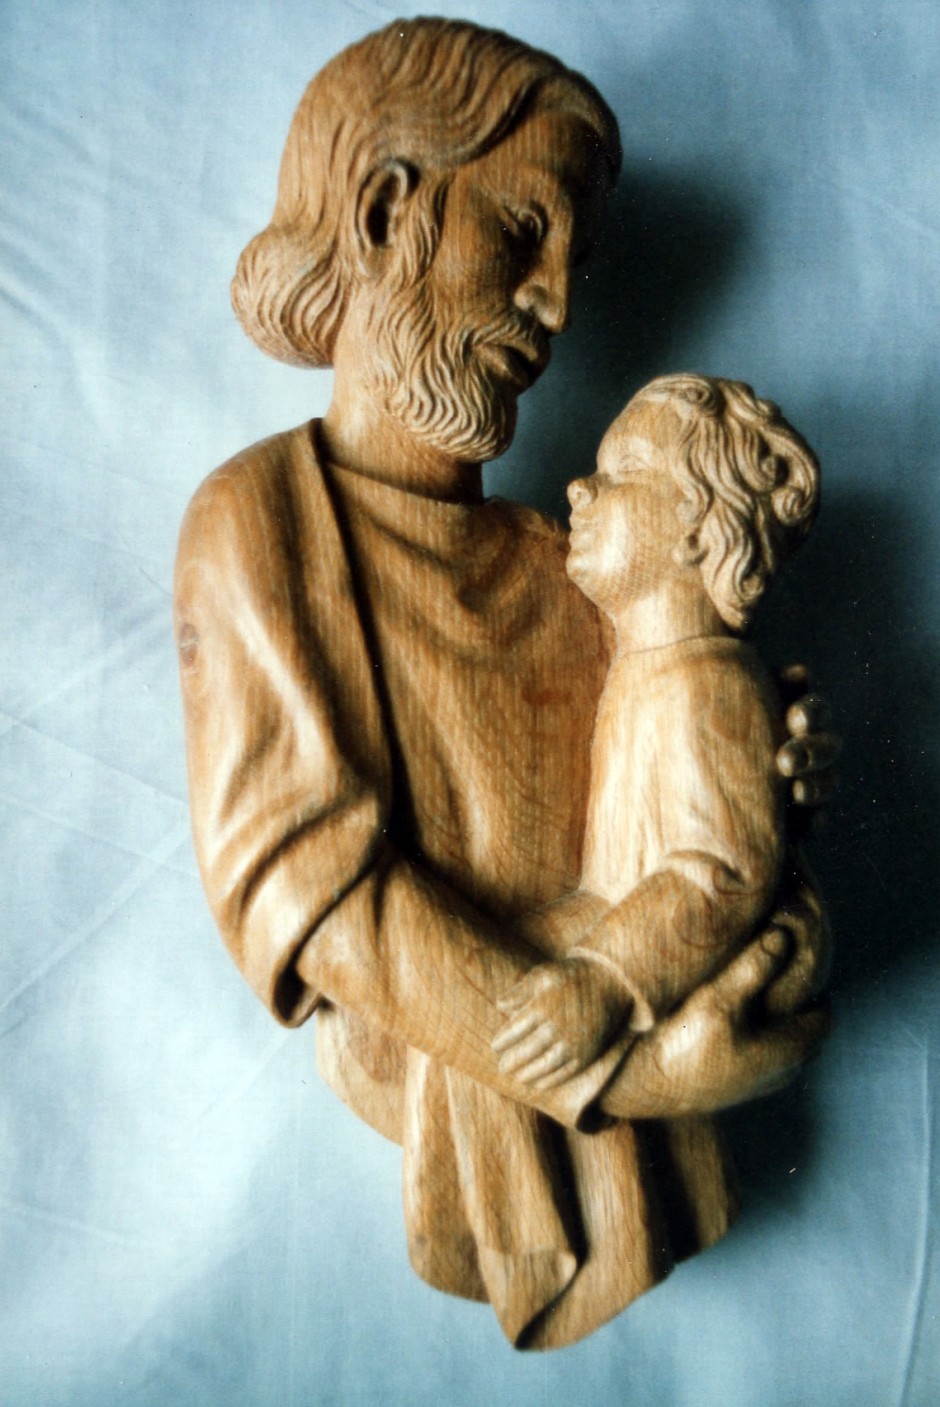 Joseph and Jesus - joseph jesus wood carving